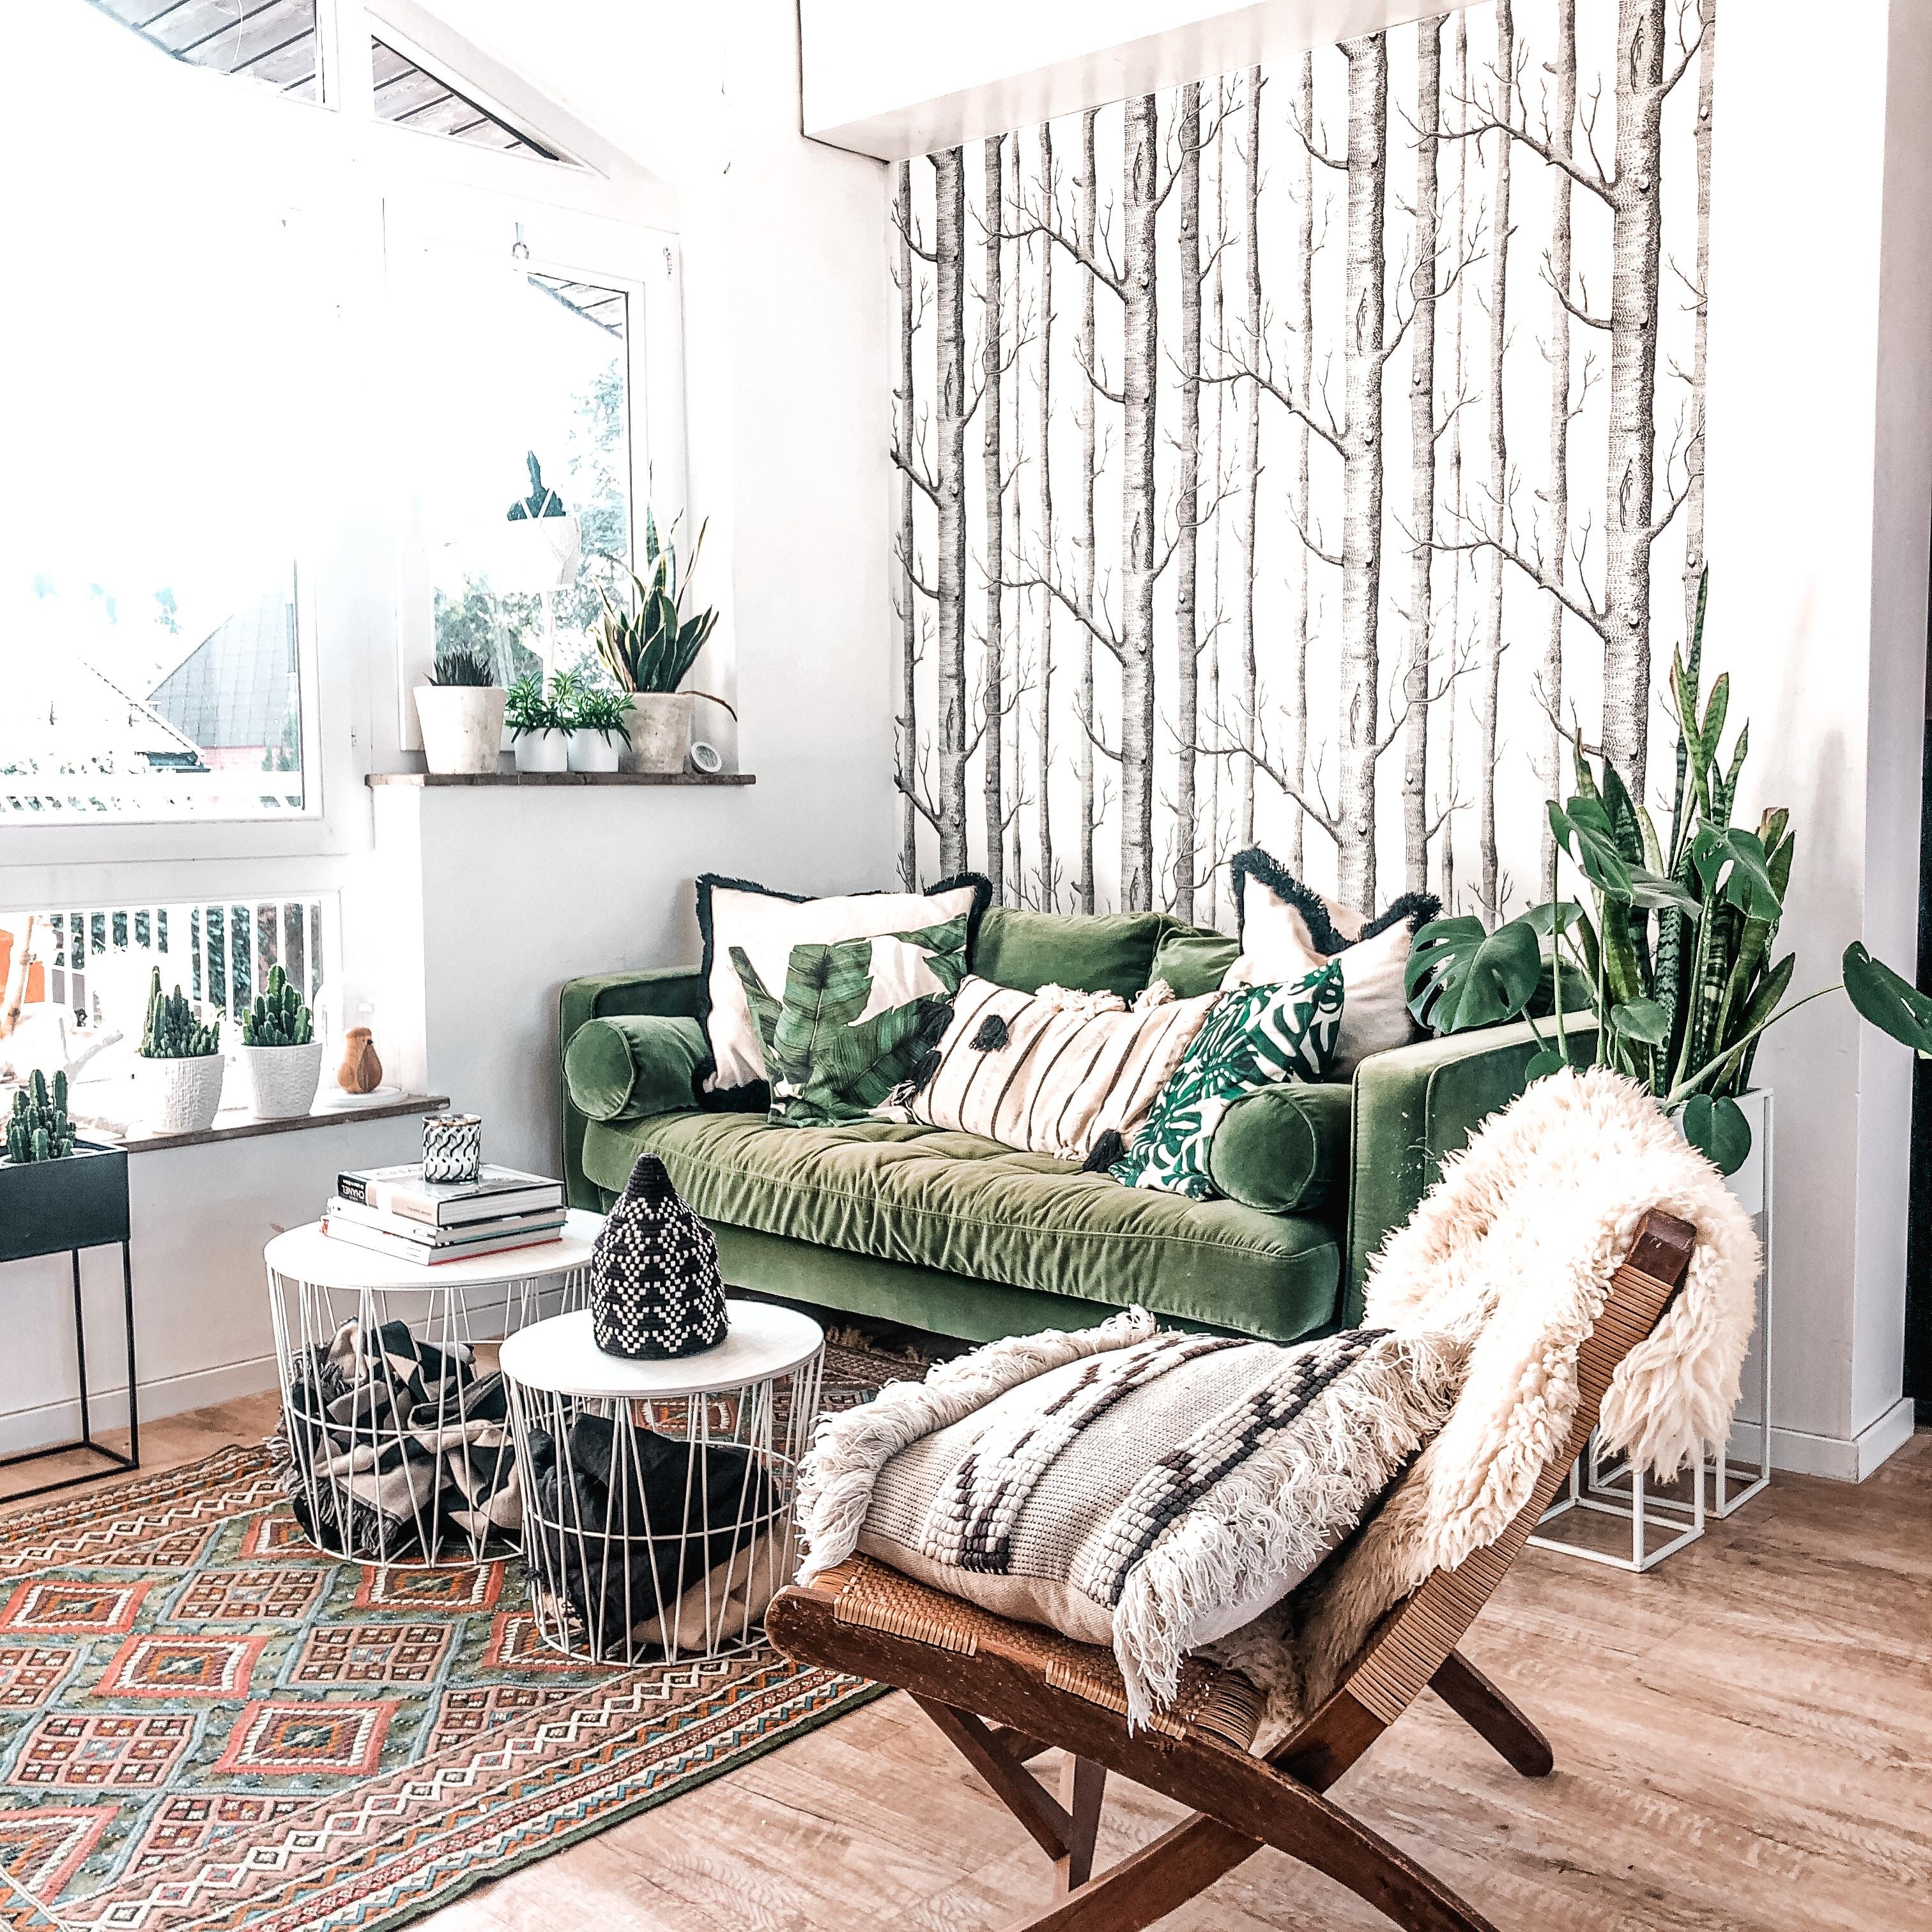 Mal wieder unser Lieblingsplatz etwas umgestellt und andere Deko #Couchstyle #livingroom #lieblingsplatz